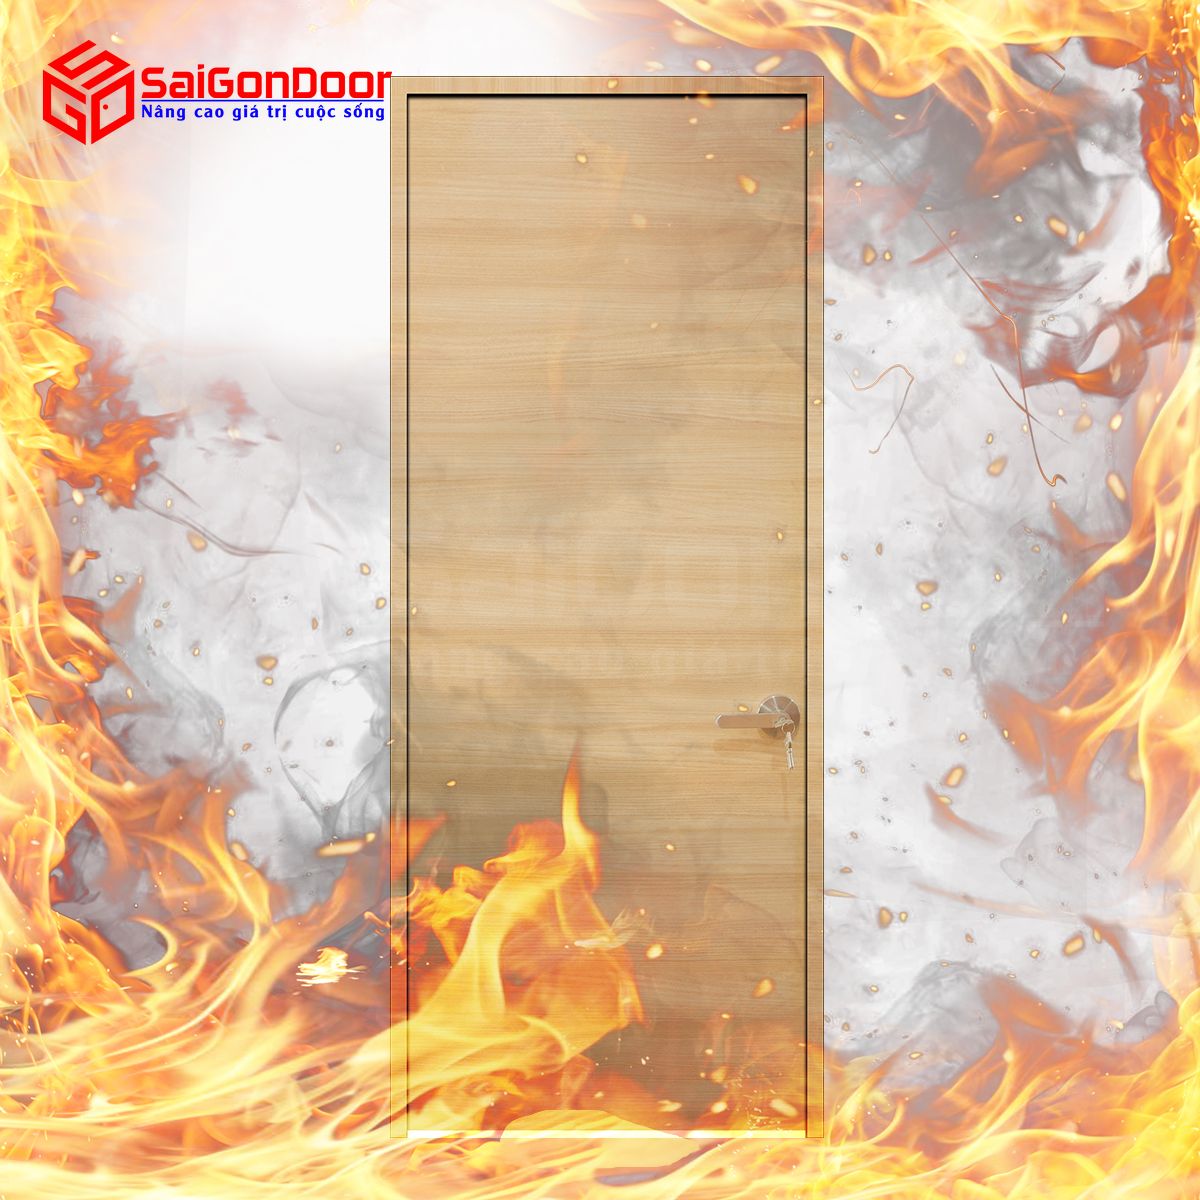 Cửa gỗ chống cháy được phân chia theo thời gian ngăn cháy như 60 phút, 90 phút và 120 phút